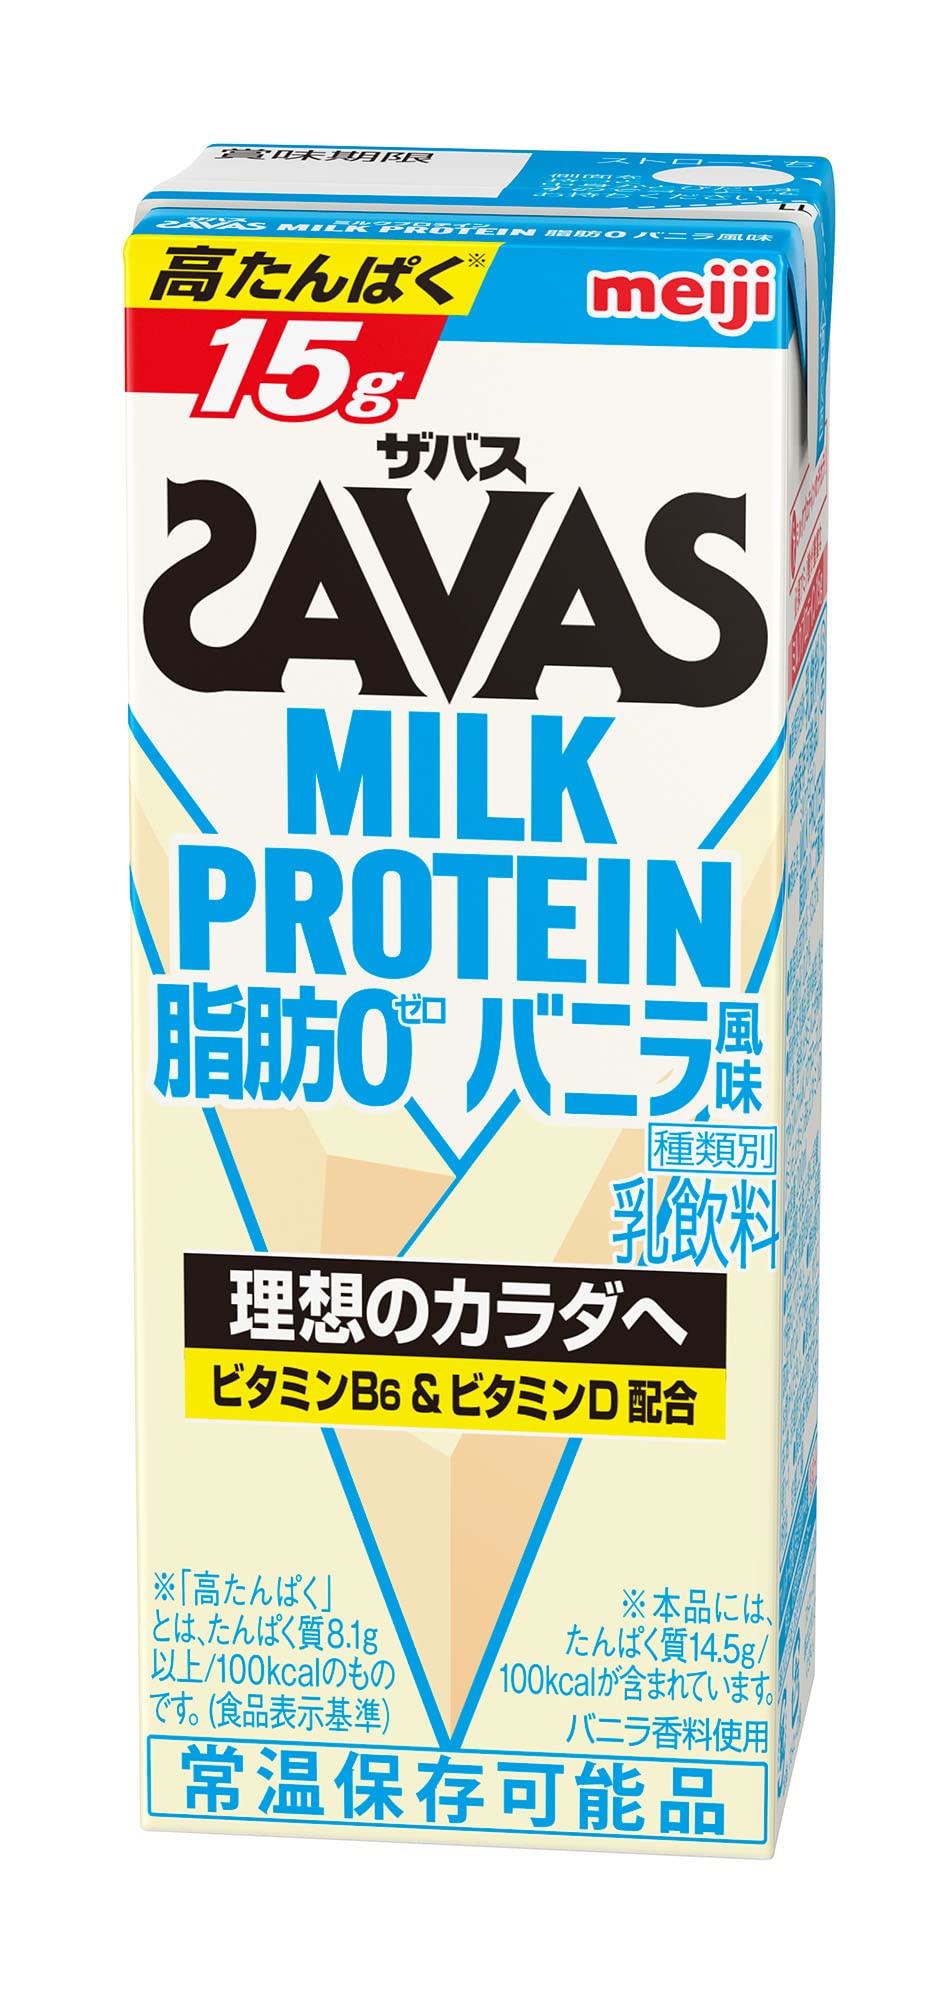 ザバス ミルクプロテイン 脂肪0 バニラ風味 200ml × 24本の商品画像